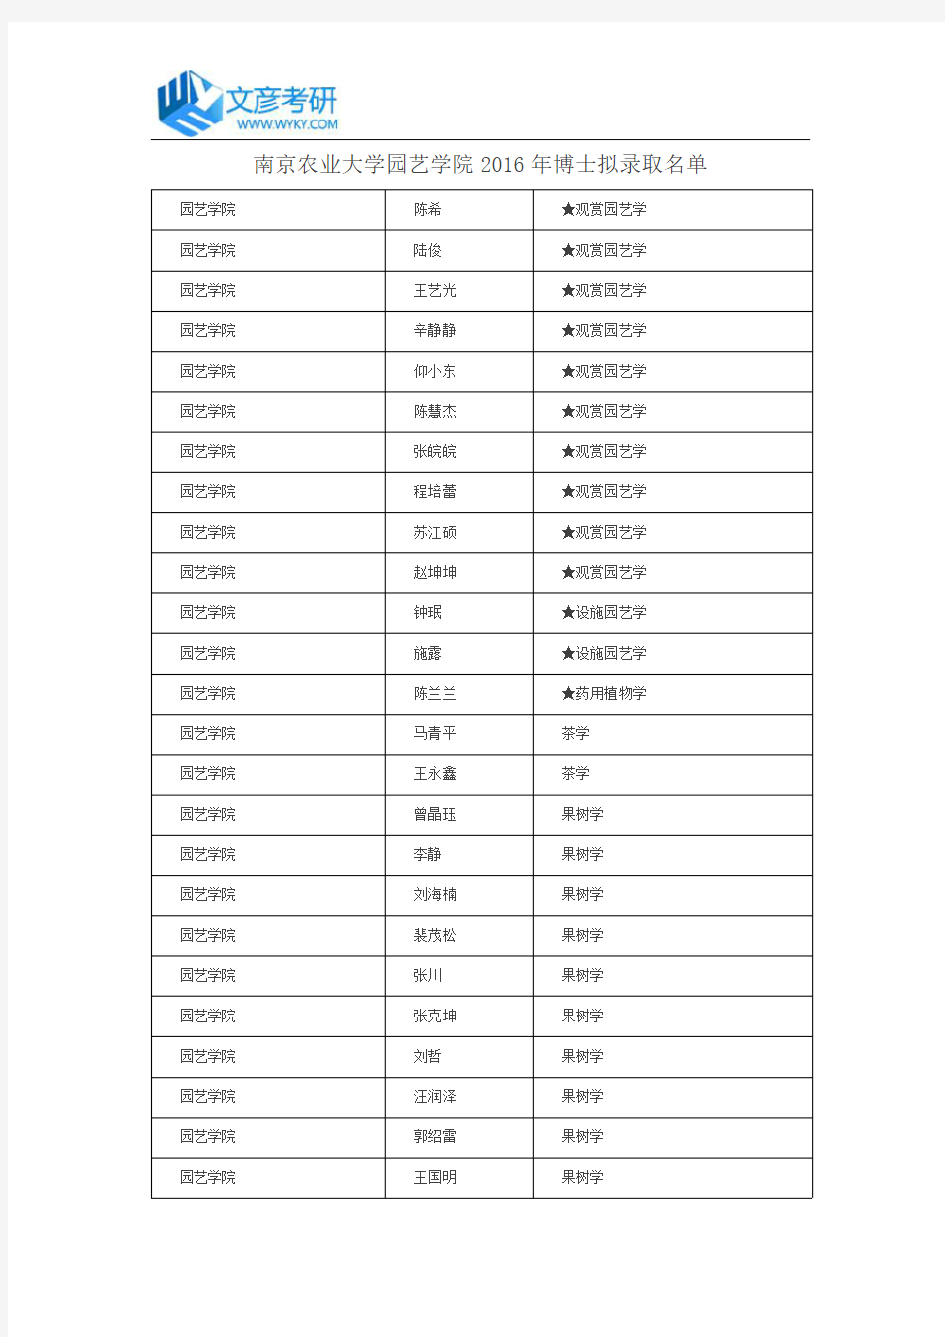 南京农业大学园艺学院2016年博士拟录取名单